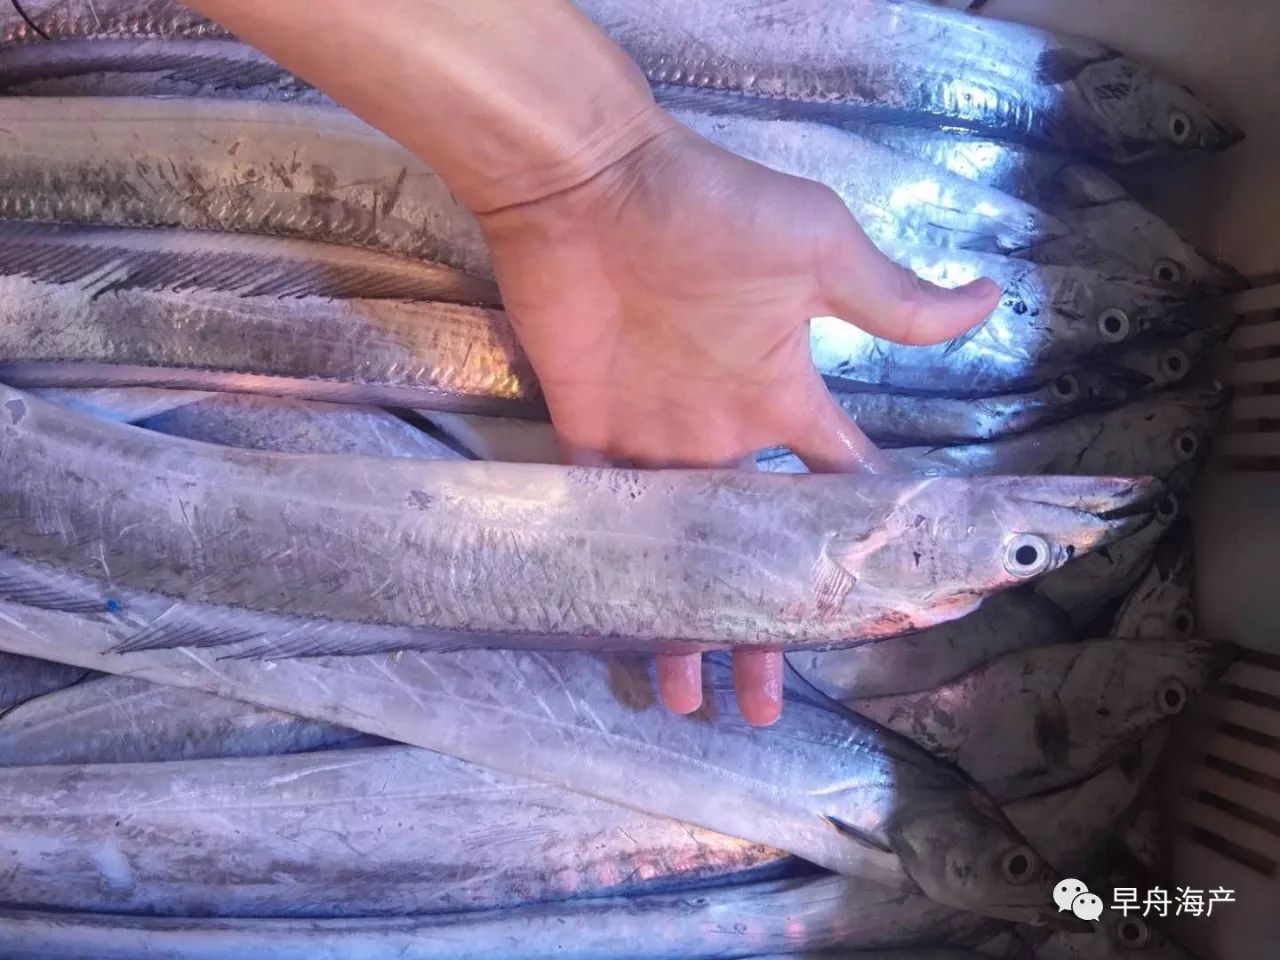 烟青地区的带鱼单体一般不超过一斤,眼睛也更小一些,在青岛我们更